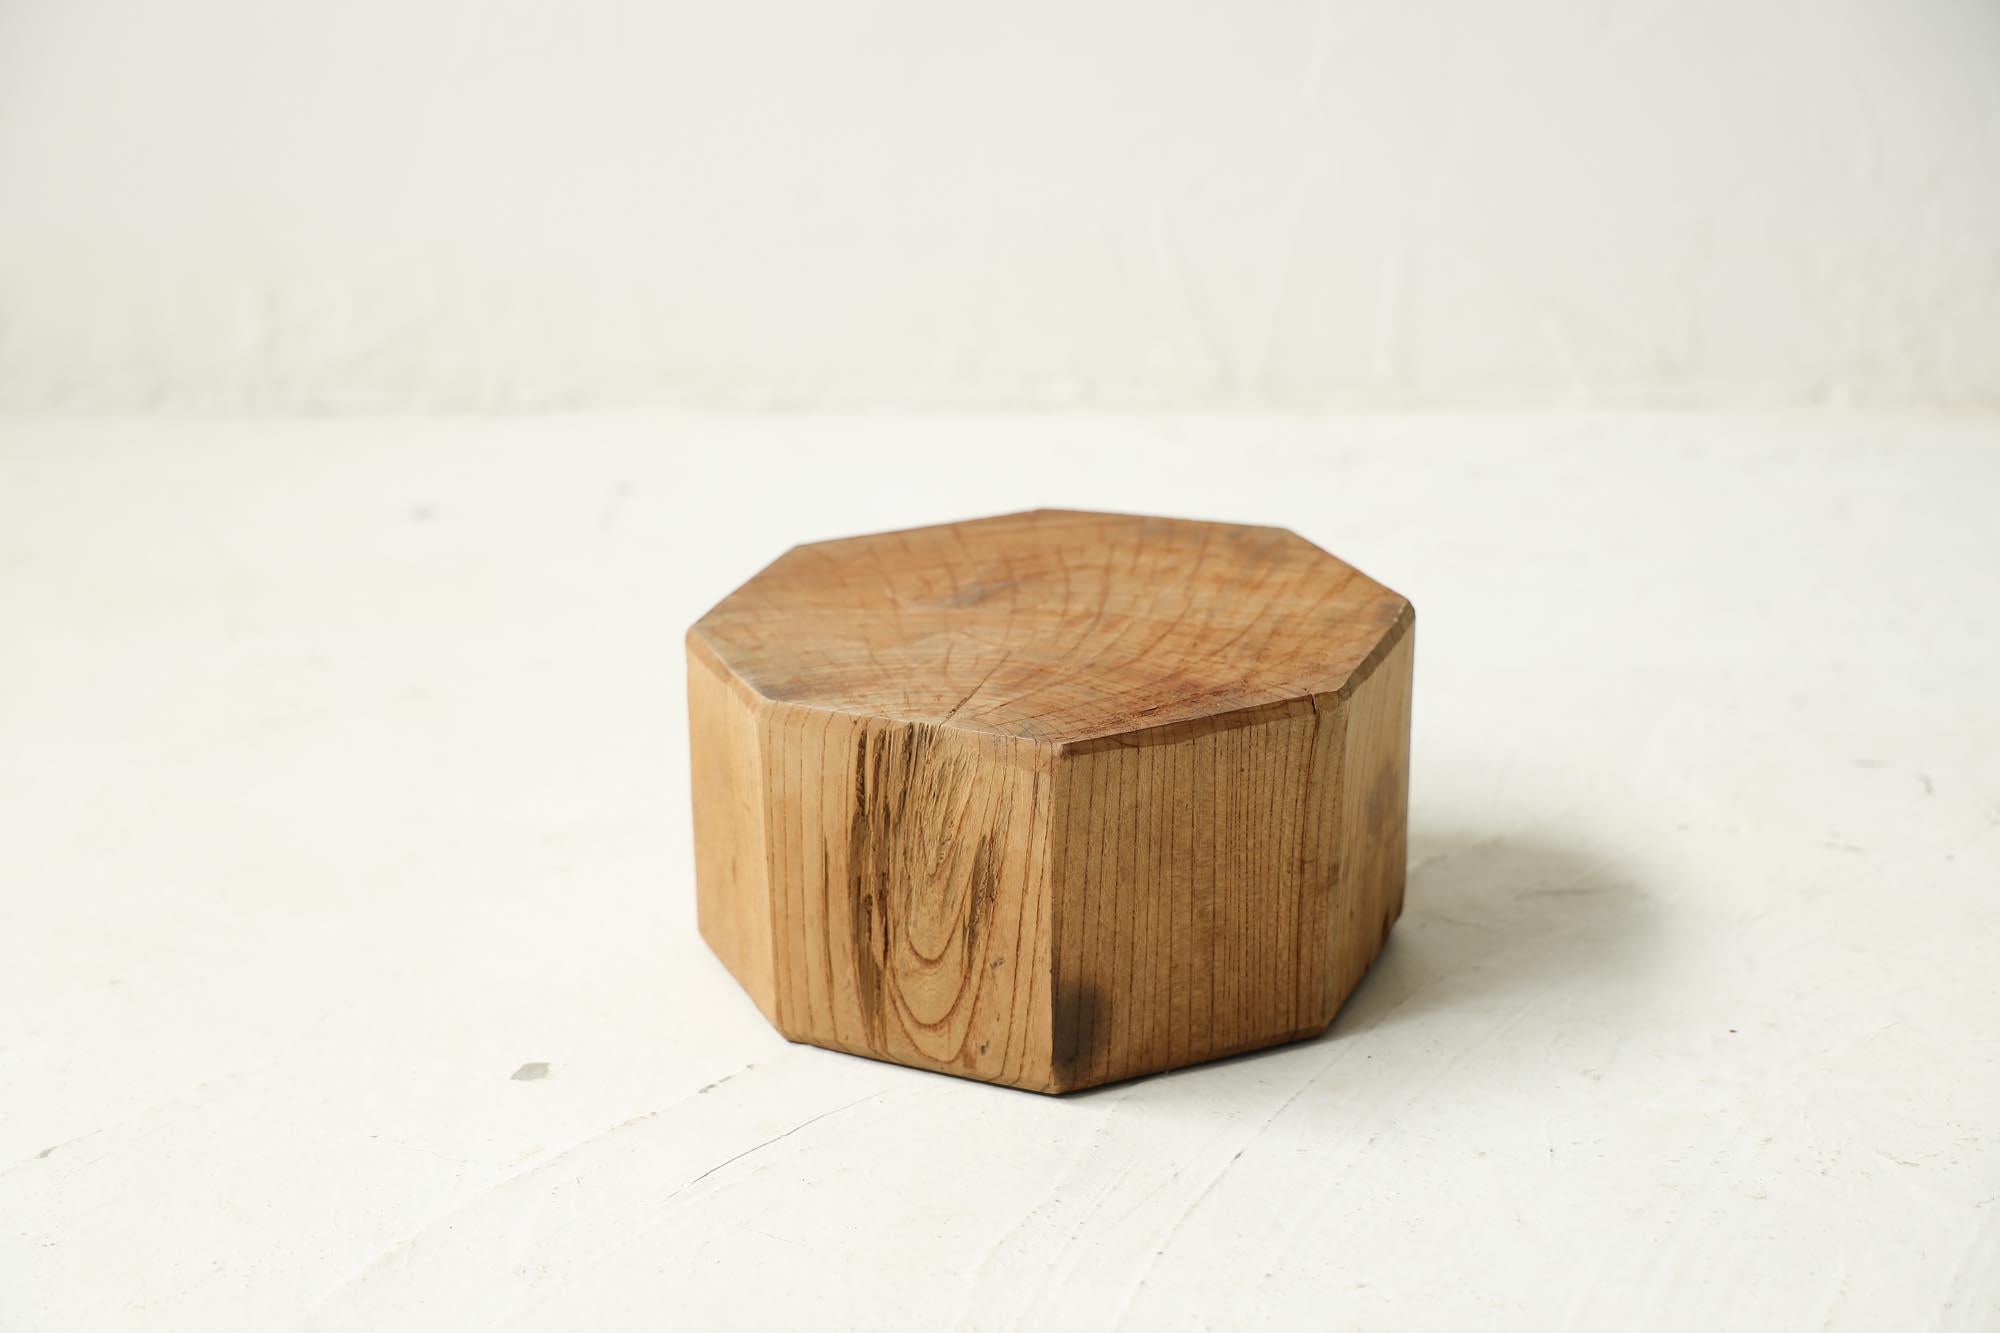 Il s'agit d'un présentoir japonais.
Le matériau est le zelkova, un bois unique au Japon.
Il s'agit d'un article très rare.

La finition est réalisée par un artisan à l'aide d'un rabot.

Le grain du bois est élégant et magnifique.
La couleur